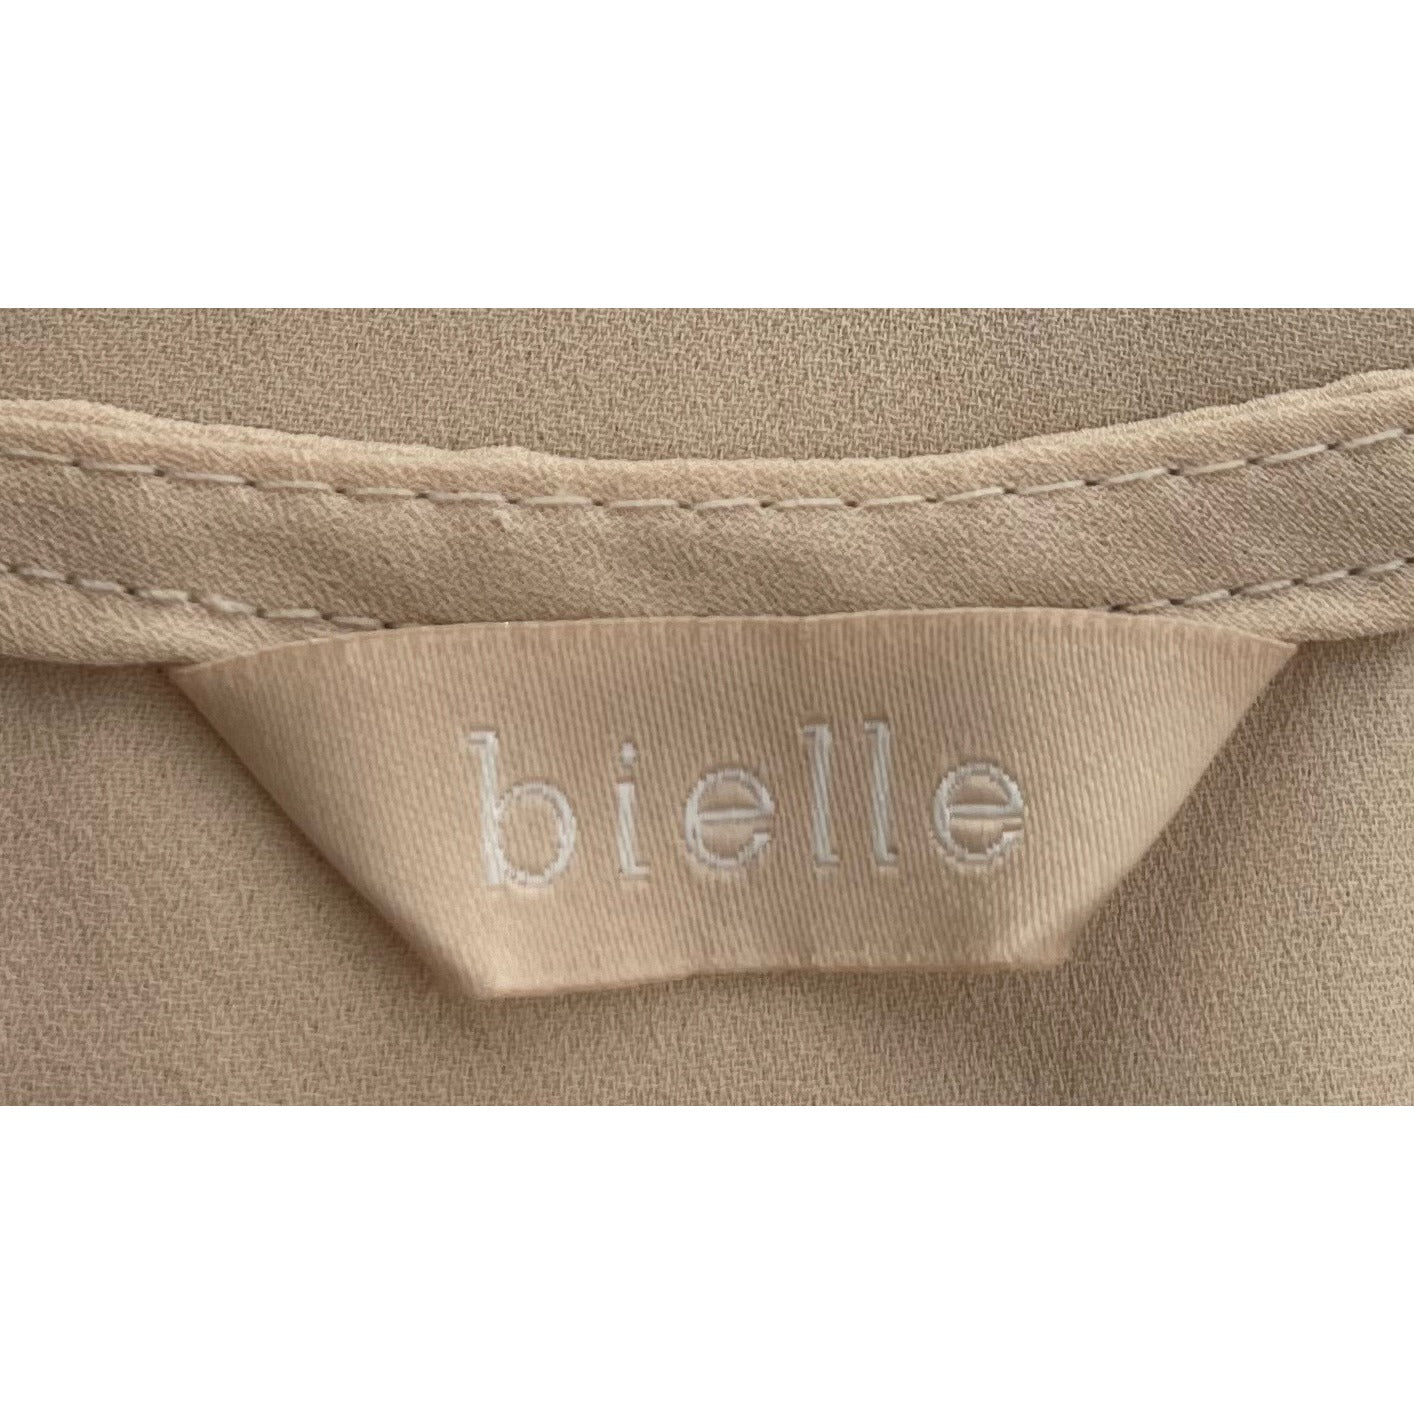 Bielle Women's Cream Lace W/ Golden Thread Sleeveless Flapper Dress